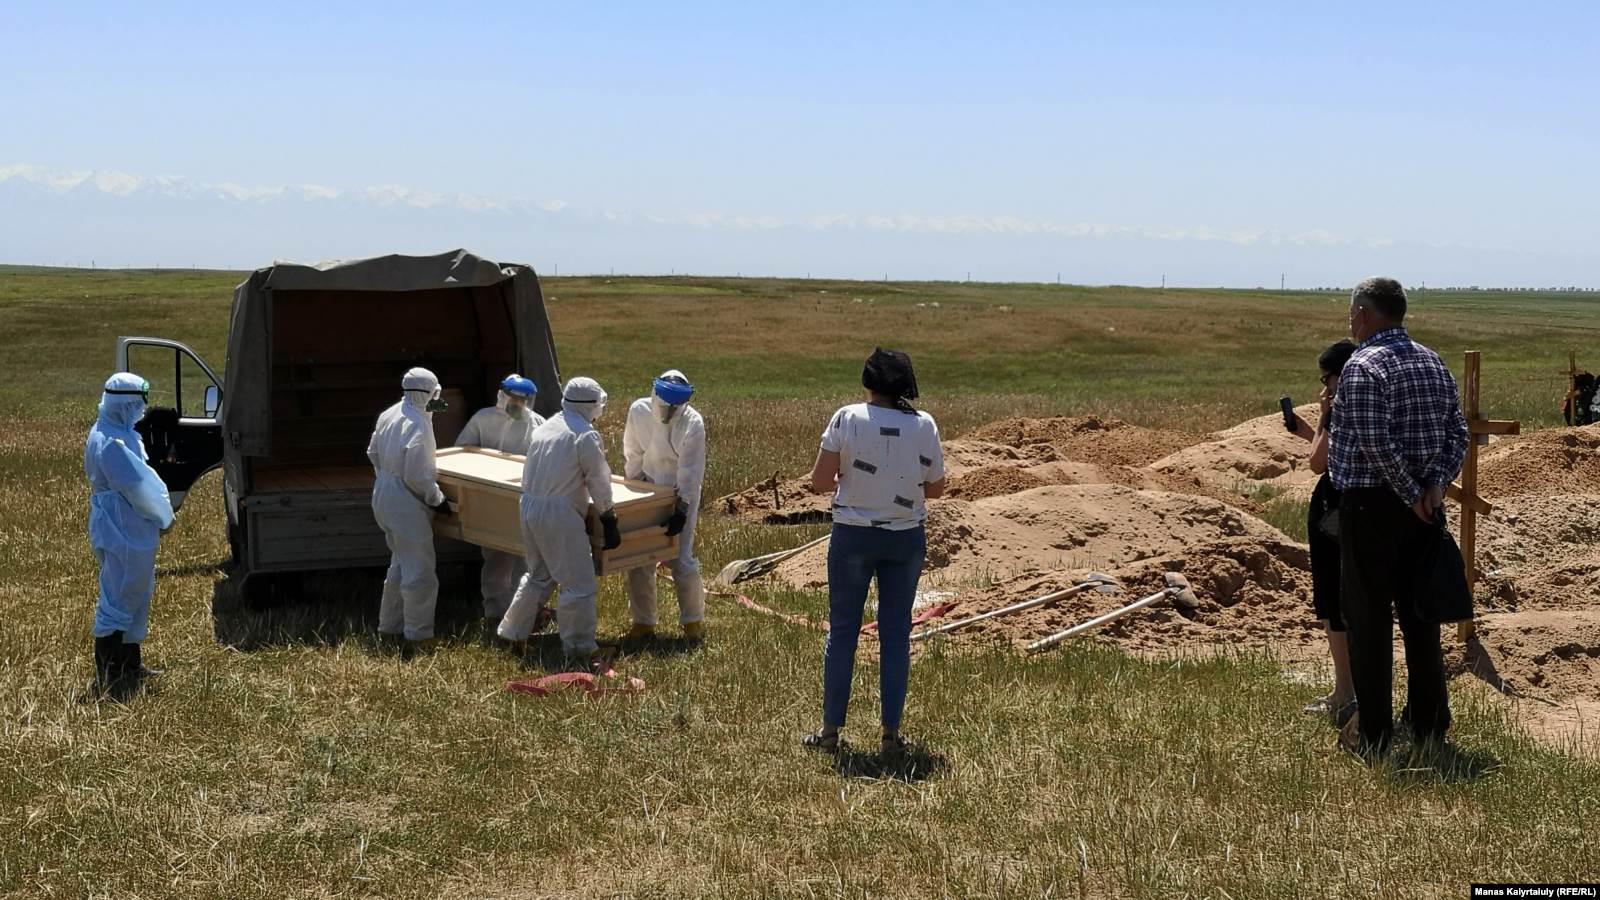 Похороны на кладбище для жертв коронавируса. Алматинская область, неподалеку от села Караой. 25 мая 2020 года.